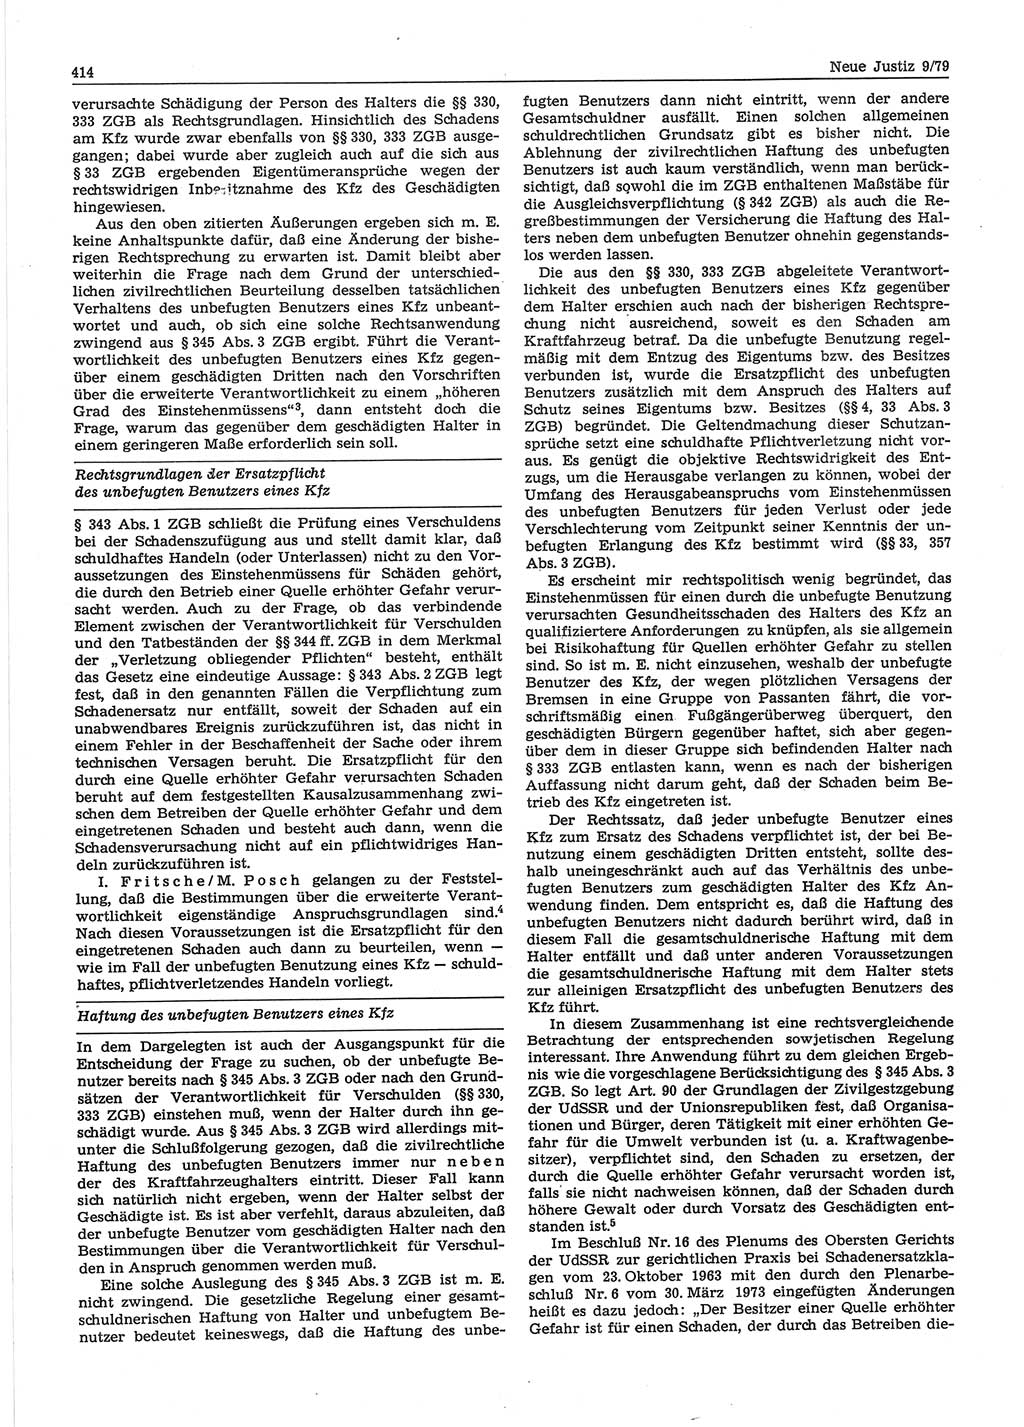 Neue Justiz (NJ), Zeitschrift für sozialistisches Recht und Gesetzlichkeit [Deutsche Demokratische Republik (DDR)], 33. Jahrgang 1979, Seite 414 (NJ DDR 1979, S. 414)